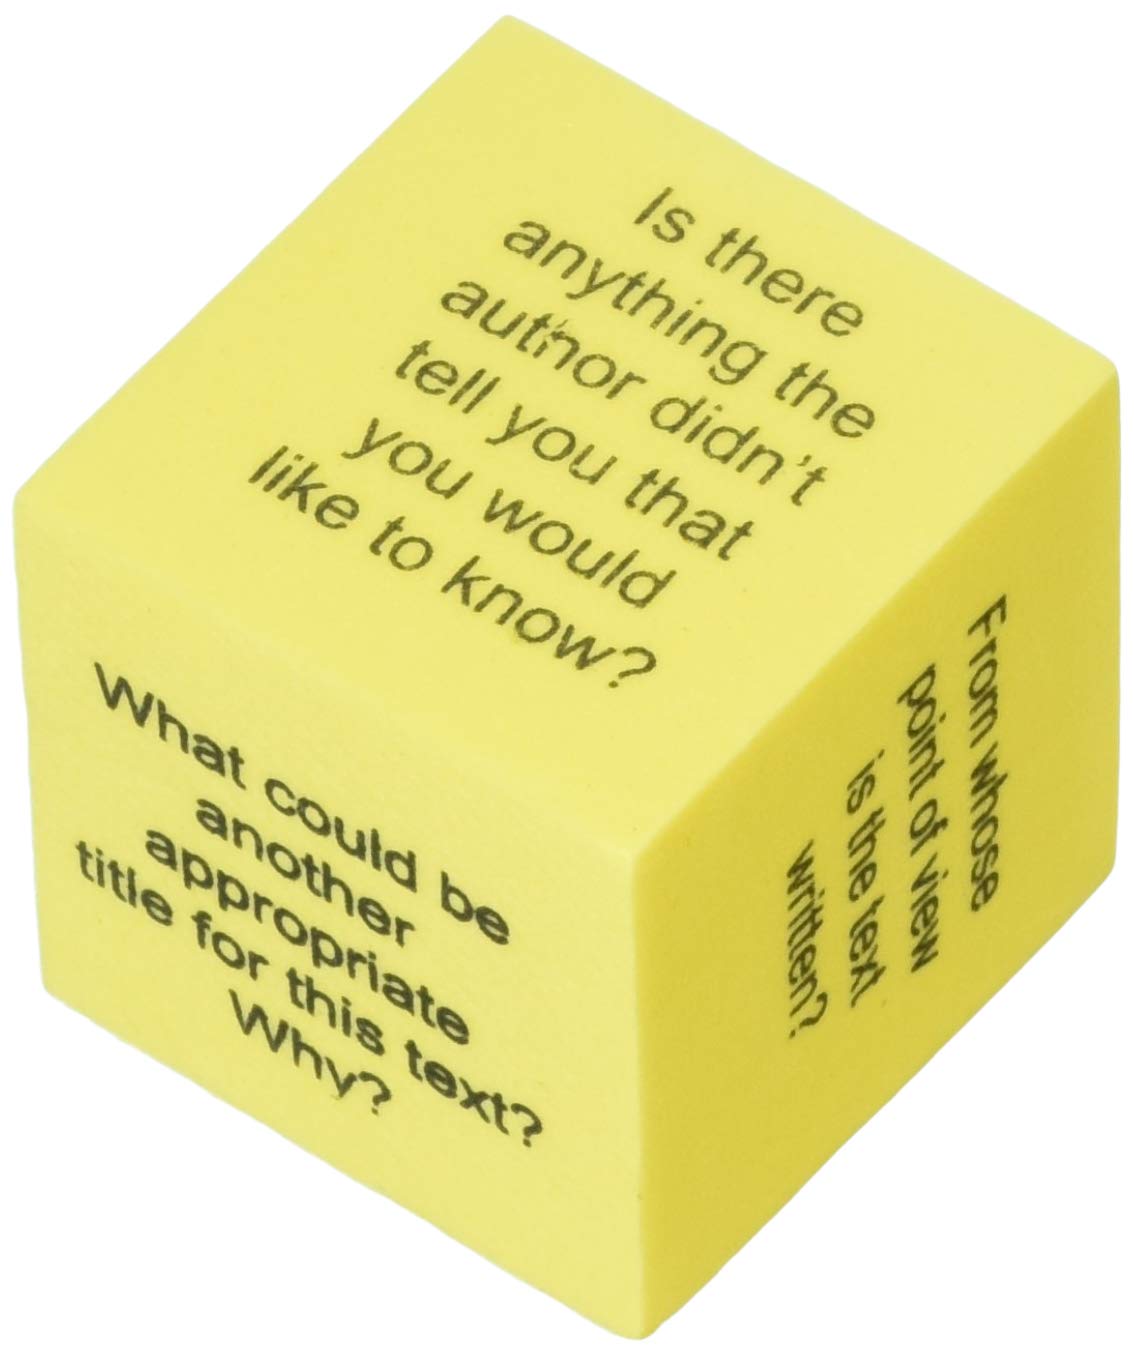 Teacher Created Resources Foam Nonfiction Comprehension Cubes (TCR20703)